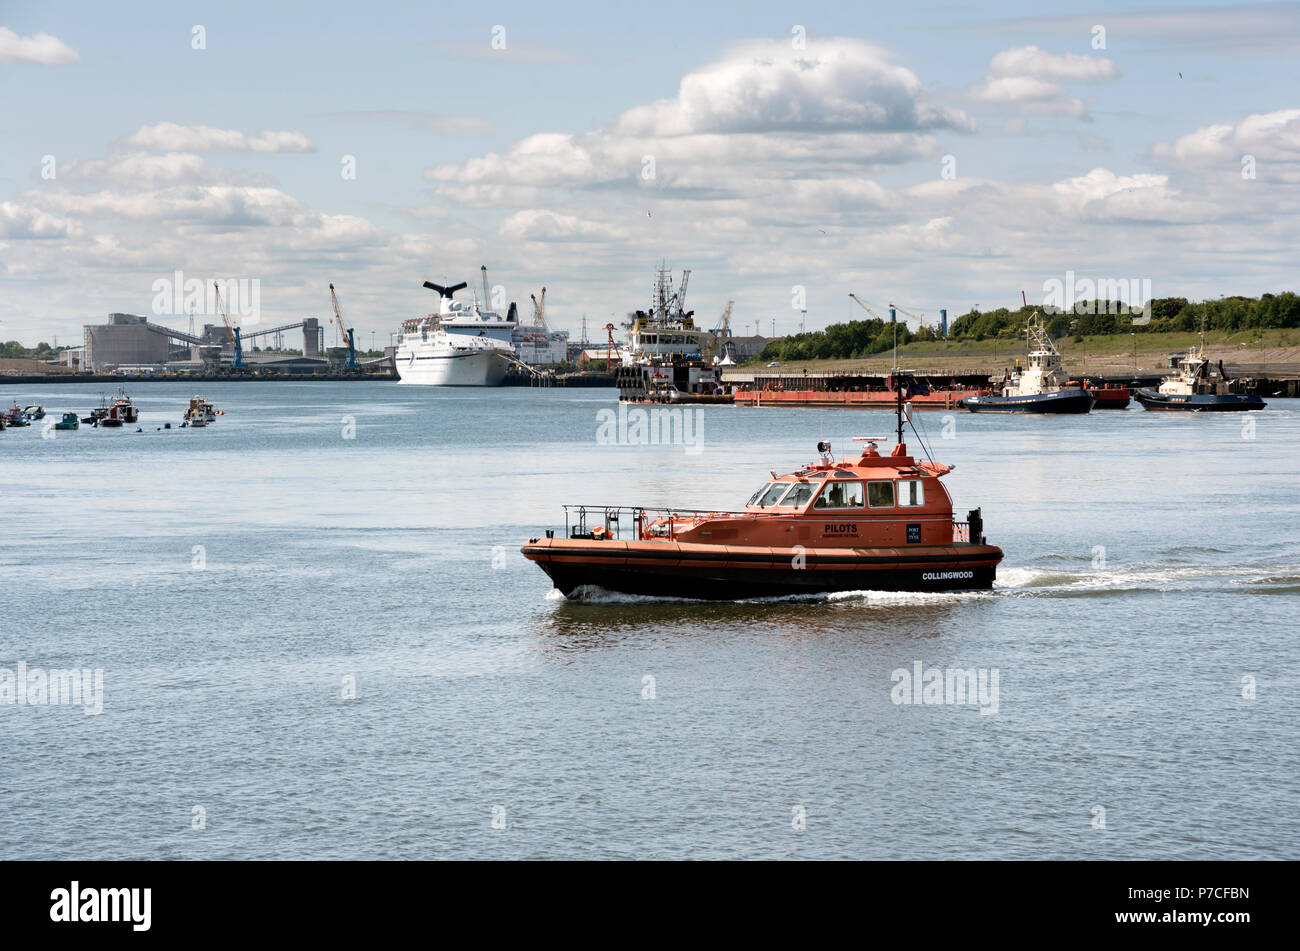 Un bateau-pilote traverse la rivière Tyne, avec un navire amarré au port des ferries dans l'arrière-plan, North Shields, Tyneside, UK Banque D'Images